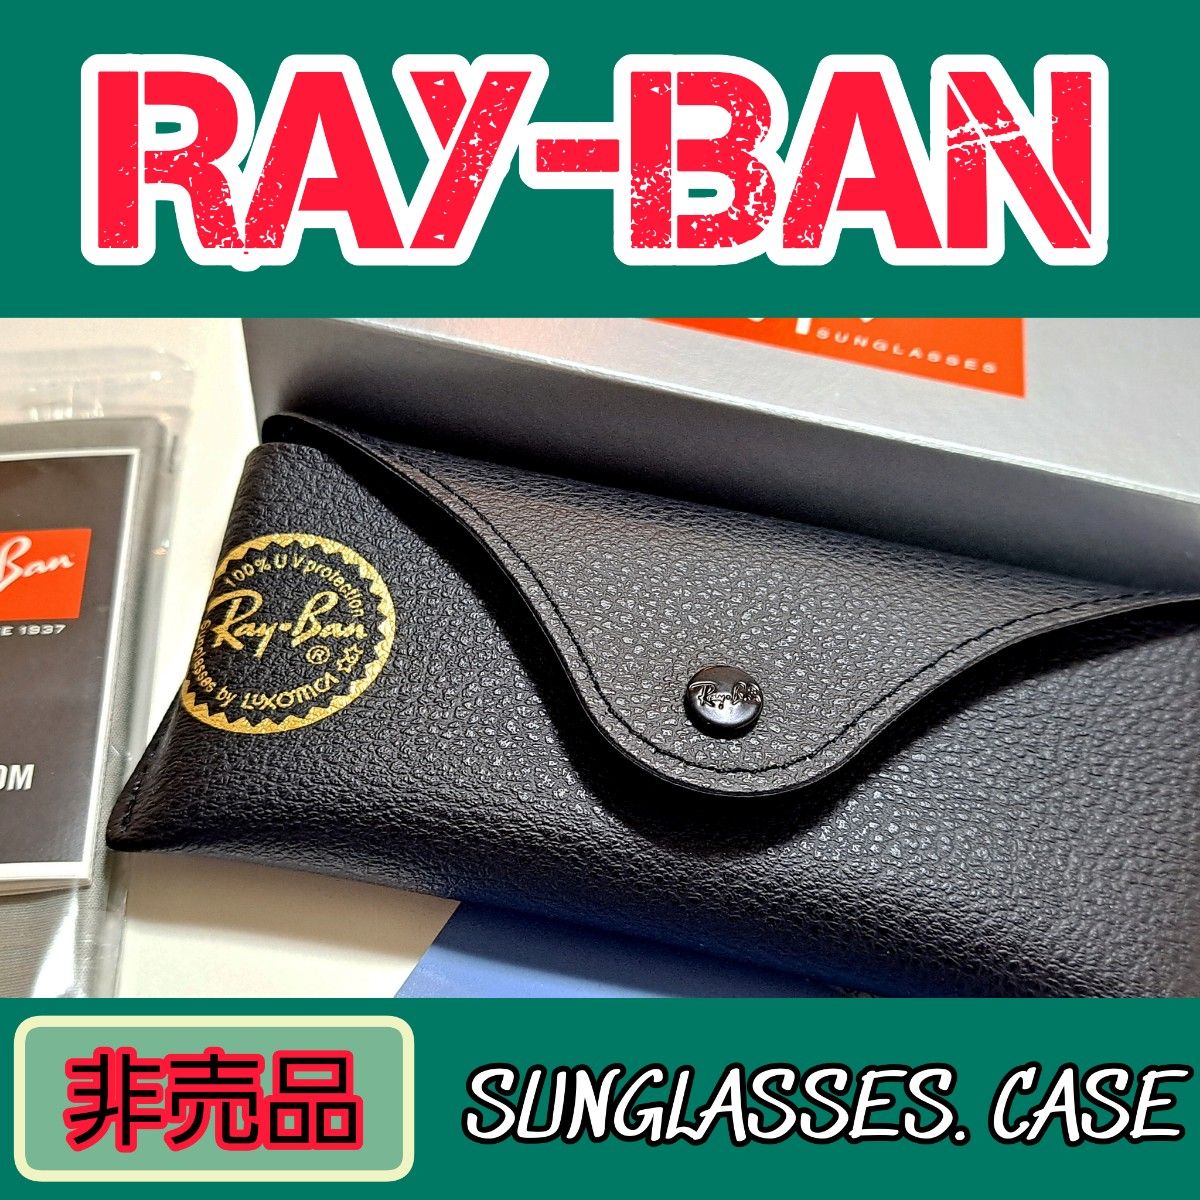 人気型【非売品】Ray-Ban サングラス ケース 新品 レイバン メガネ ケース